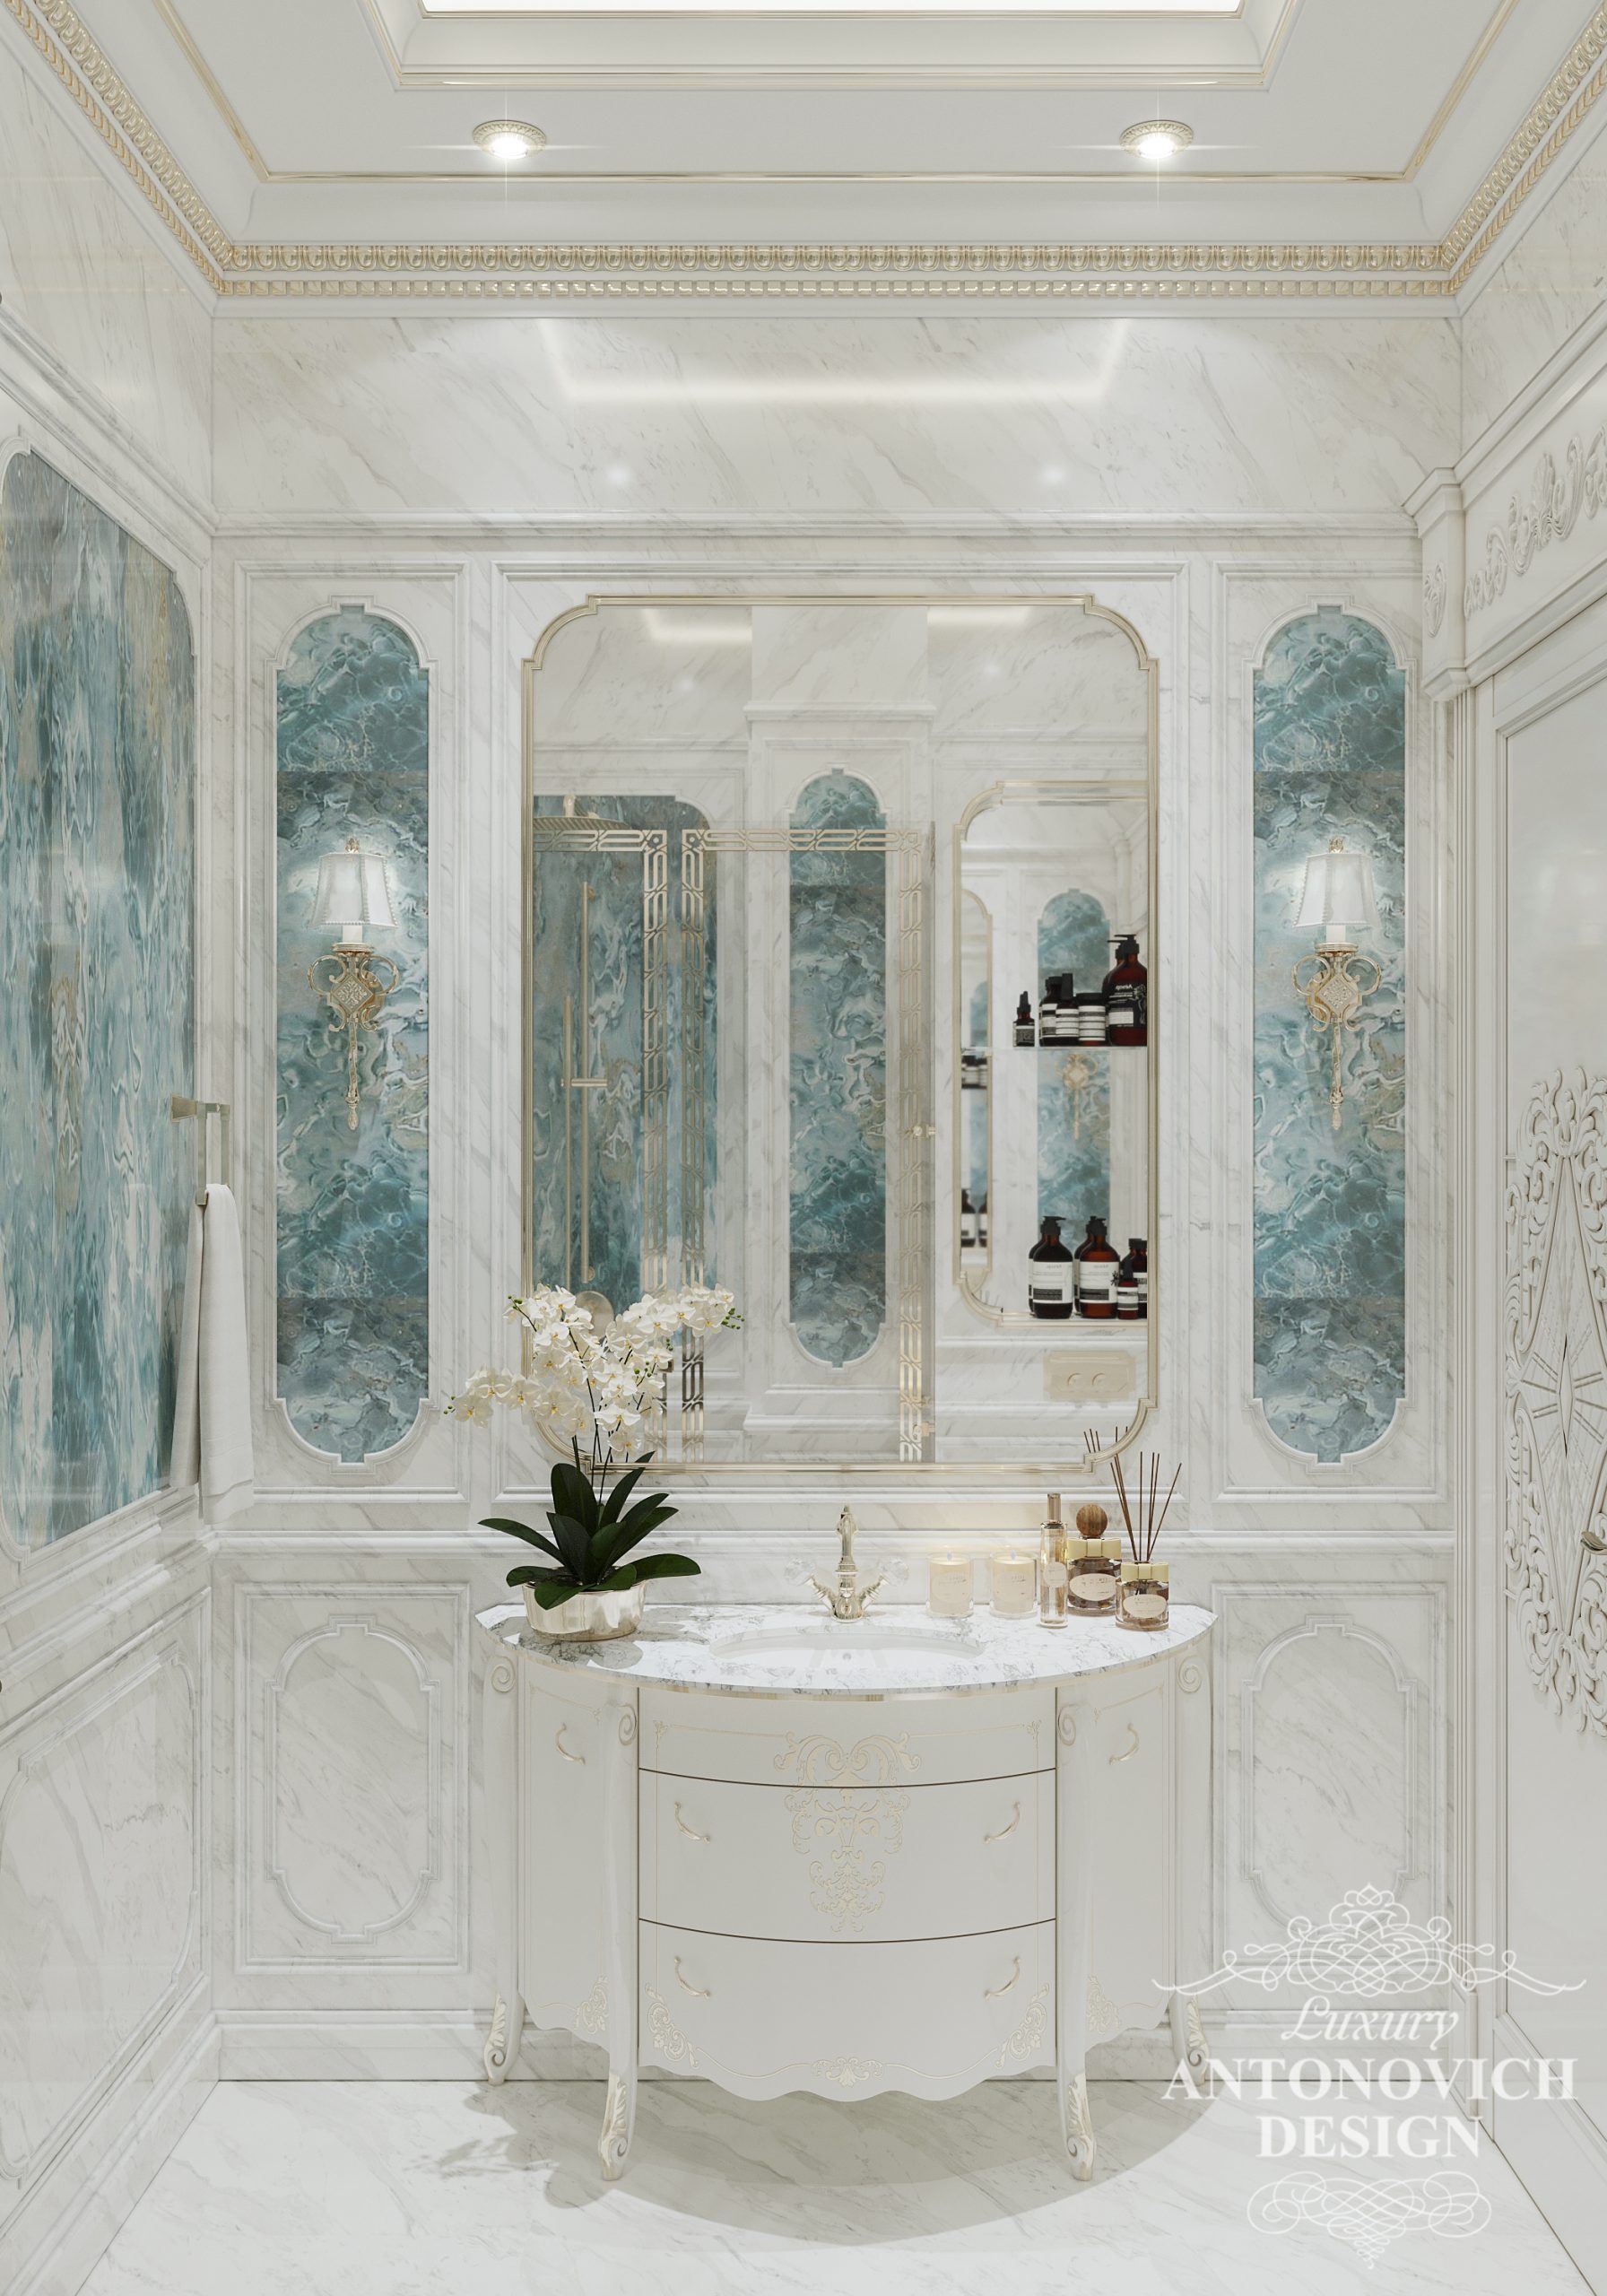 Дизайн проект ванной комнаты. Голубой мрамор в интерьере